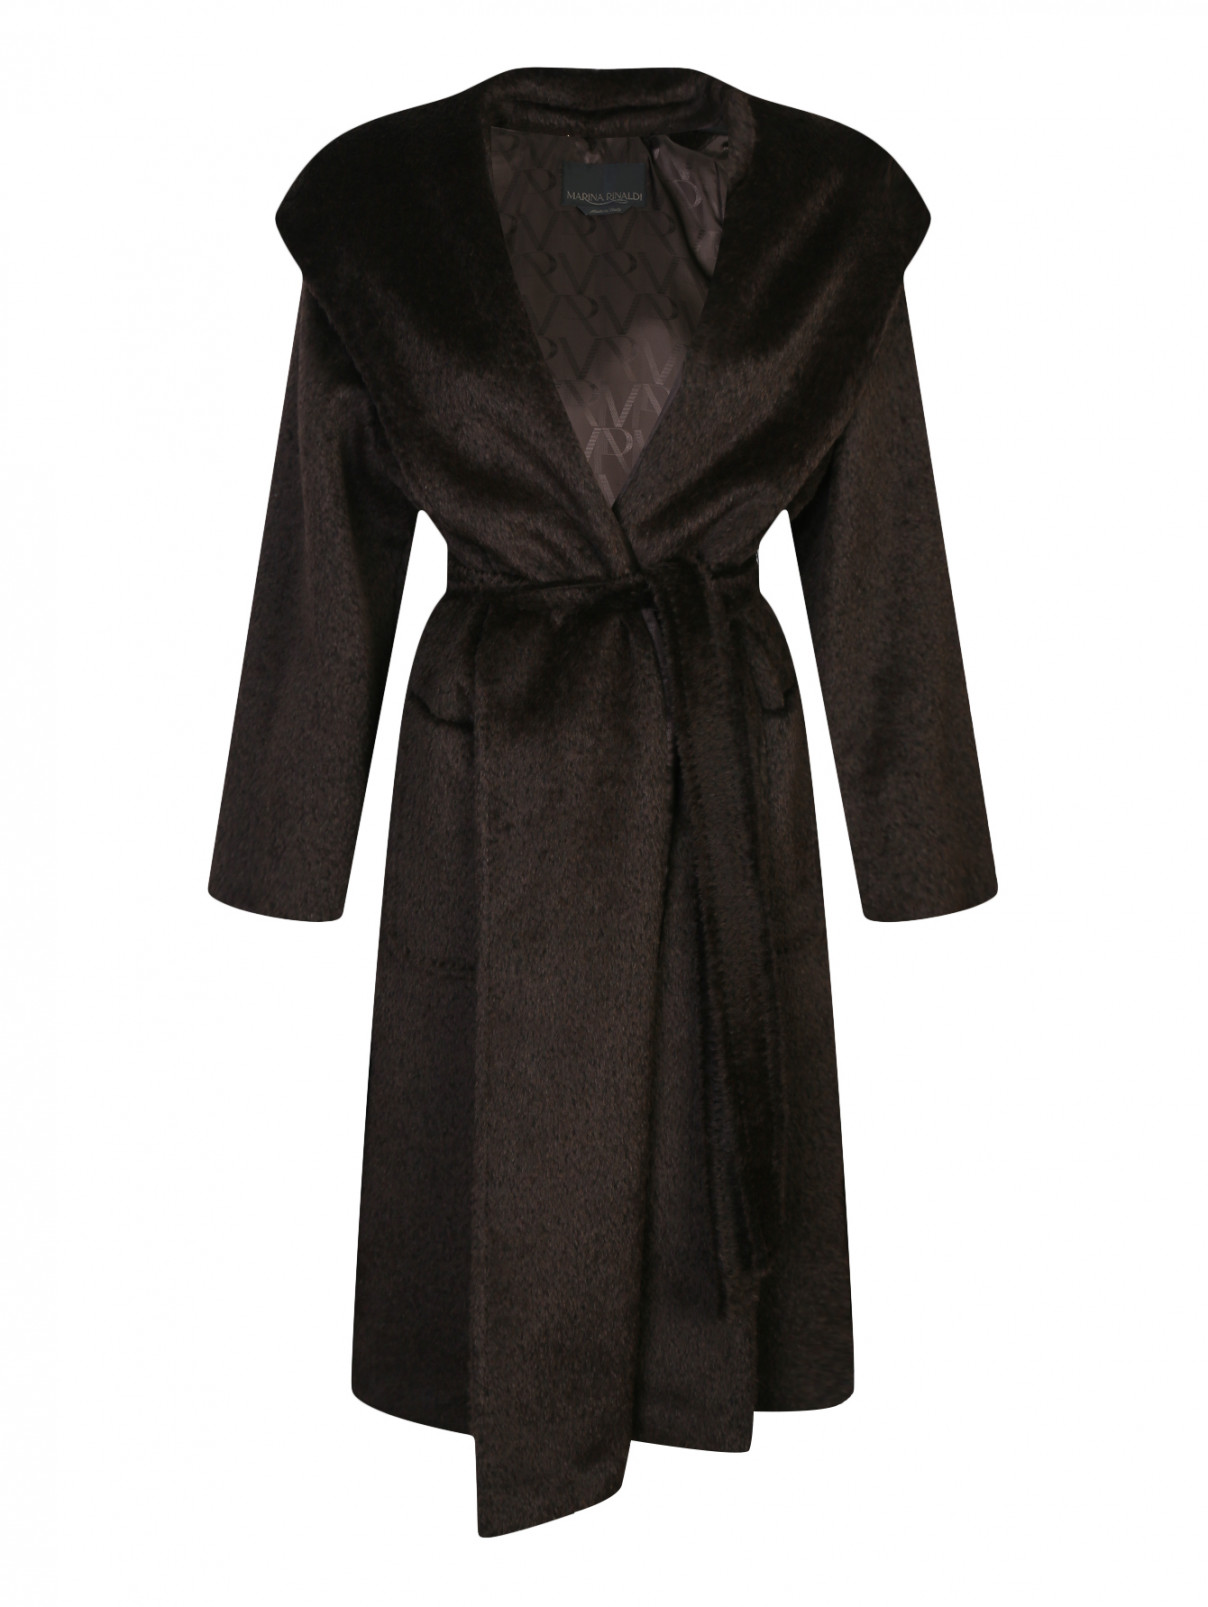 Пальто из шерсти с накладными карманами и капюшоном Marina Rinaldi  –  Общий вид  – Цвет:  Коричневый